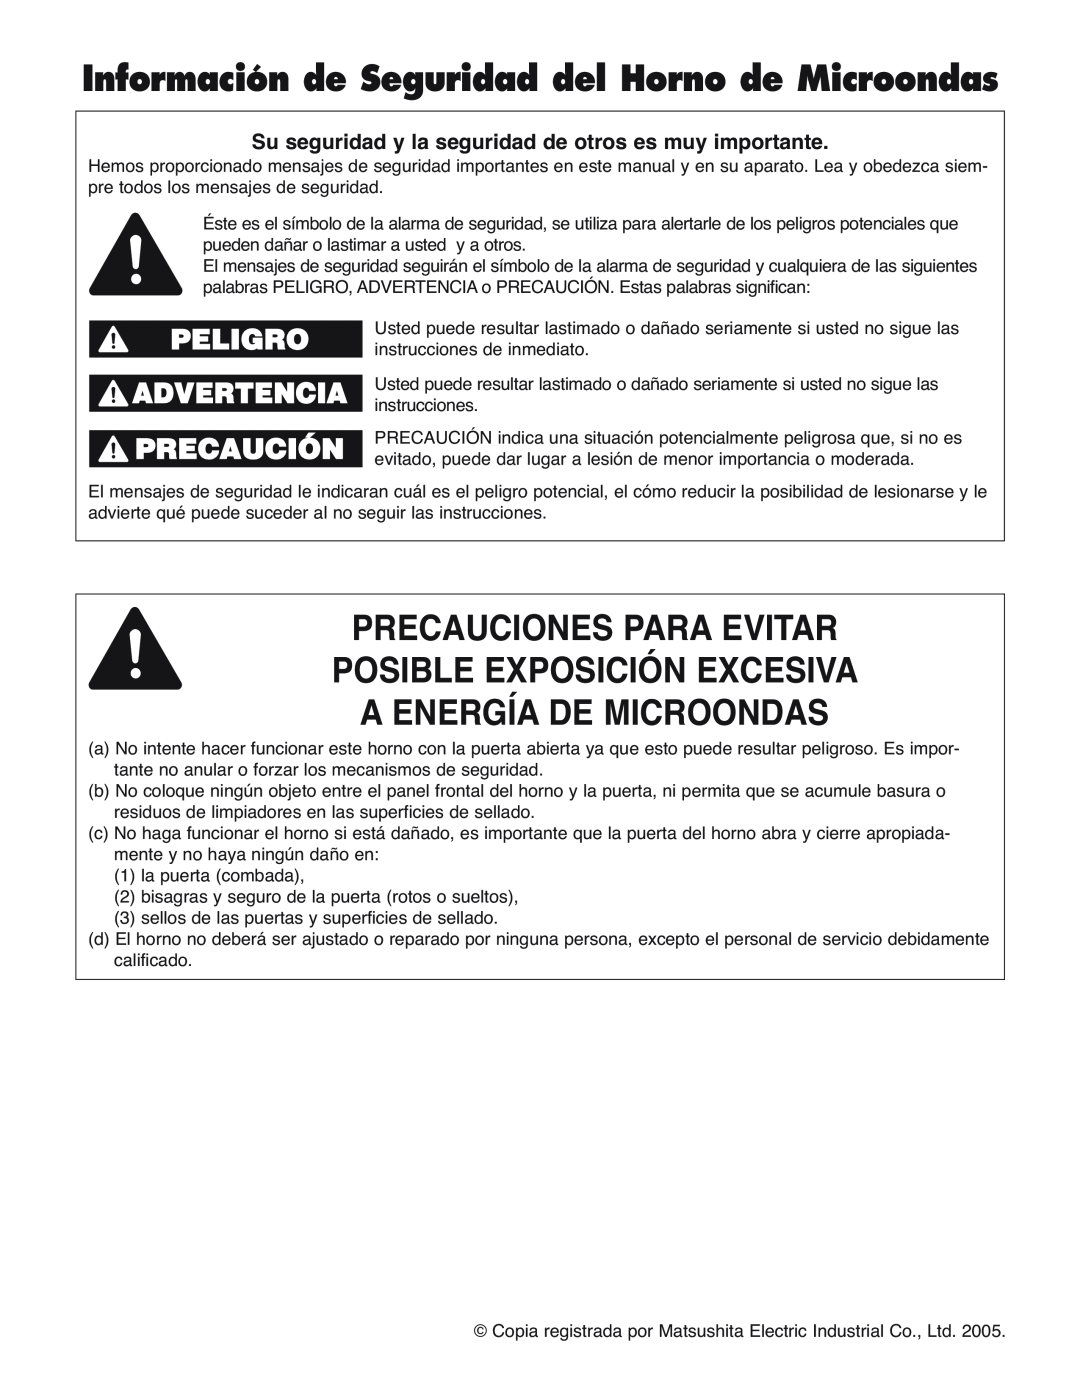 Panasonic NN-H275 Información de Seguridad del Horno de Microondas, Precauciones Para Evitar Posible Exposición Excesiva 